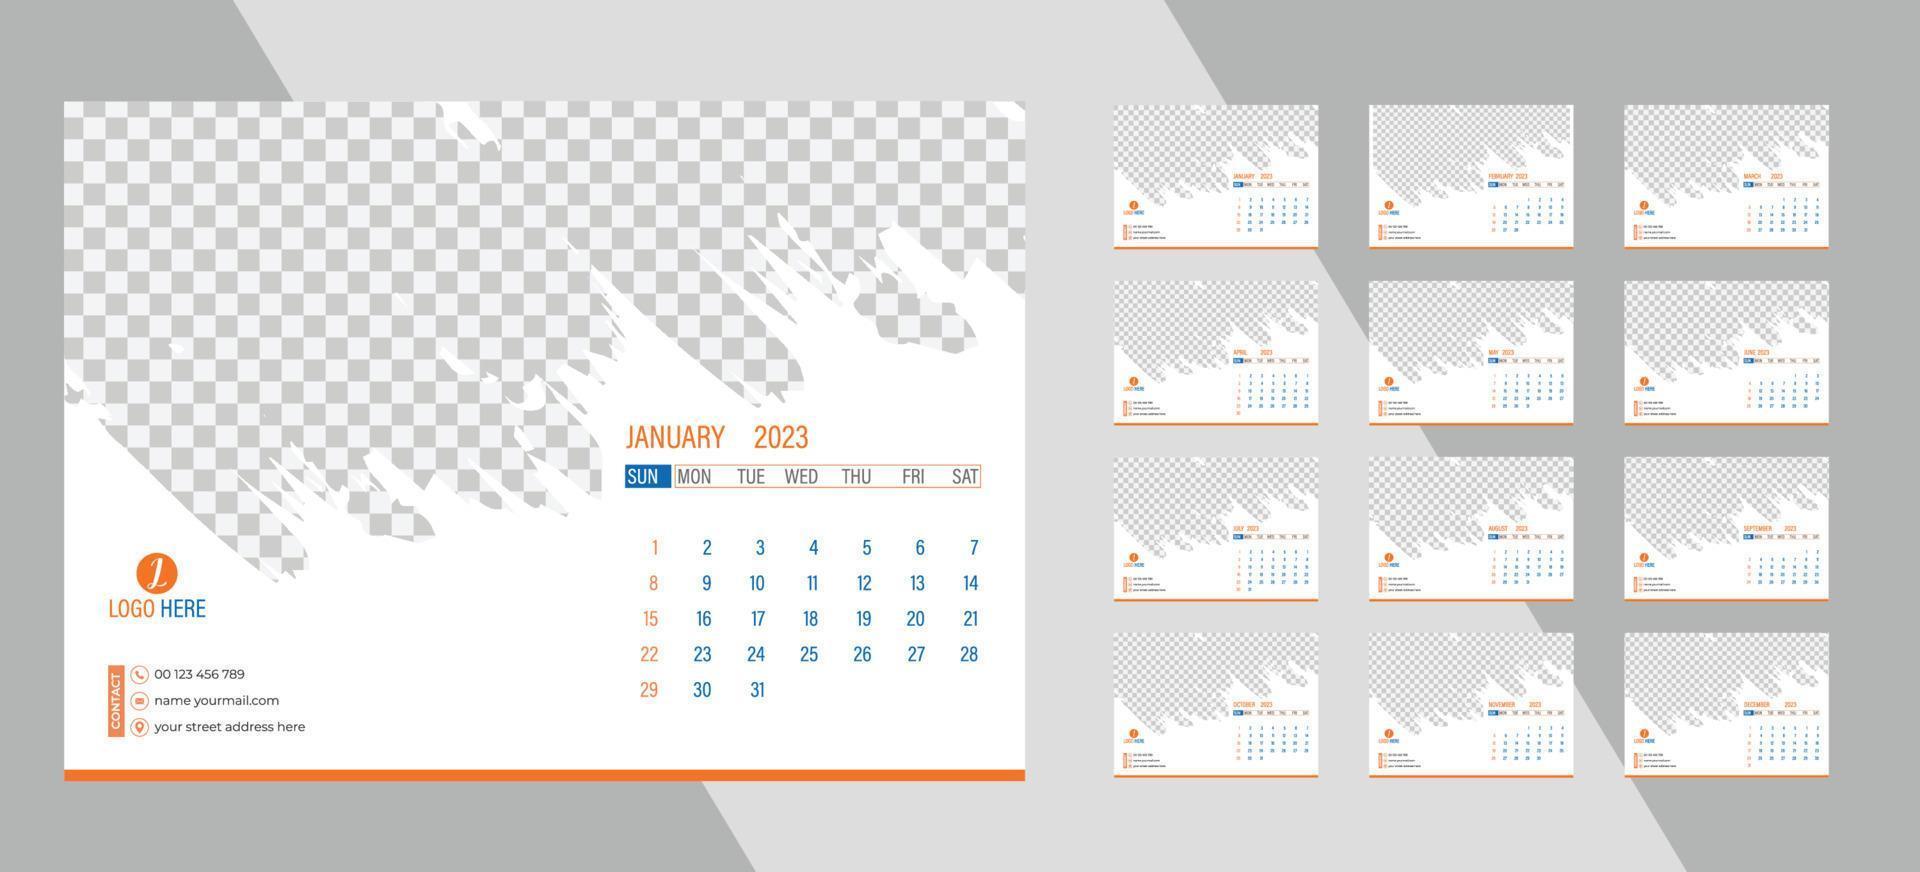 calendario de fotos mensual de escritorio 2023. diseño de calendario de fotos horizontal mensual simple para el año nuevo 2023 en inglés. calendario de portada y plantillas de 12 meses. vector